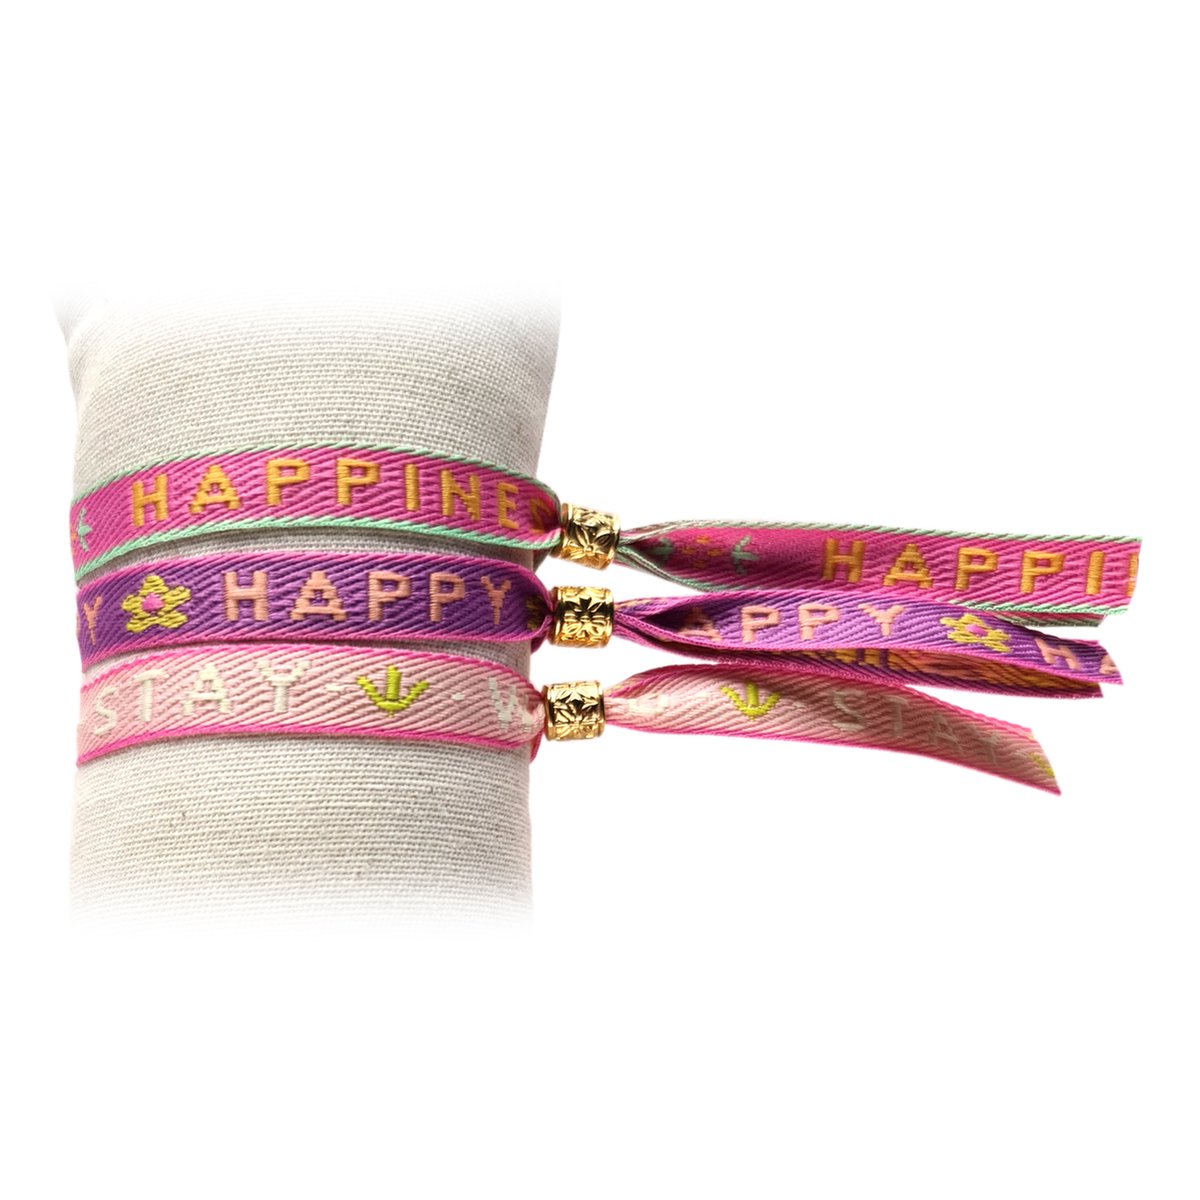 Principessa set van 3 trendy Festival lint armbandjes met tekstlint - Tekst: Happiness, Happy, Stay Wild - Kleur: Roze, Paars, Lichtroze